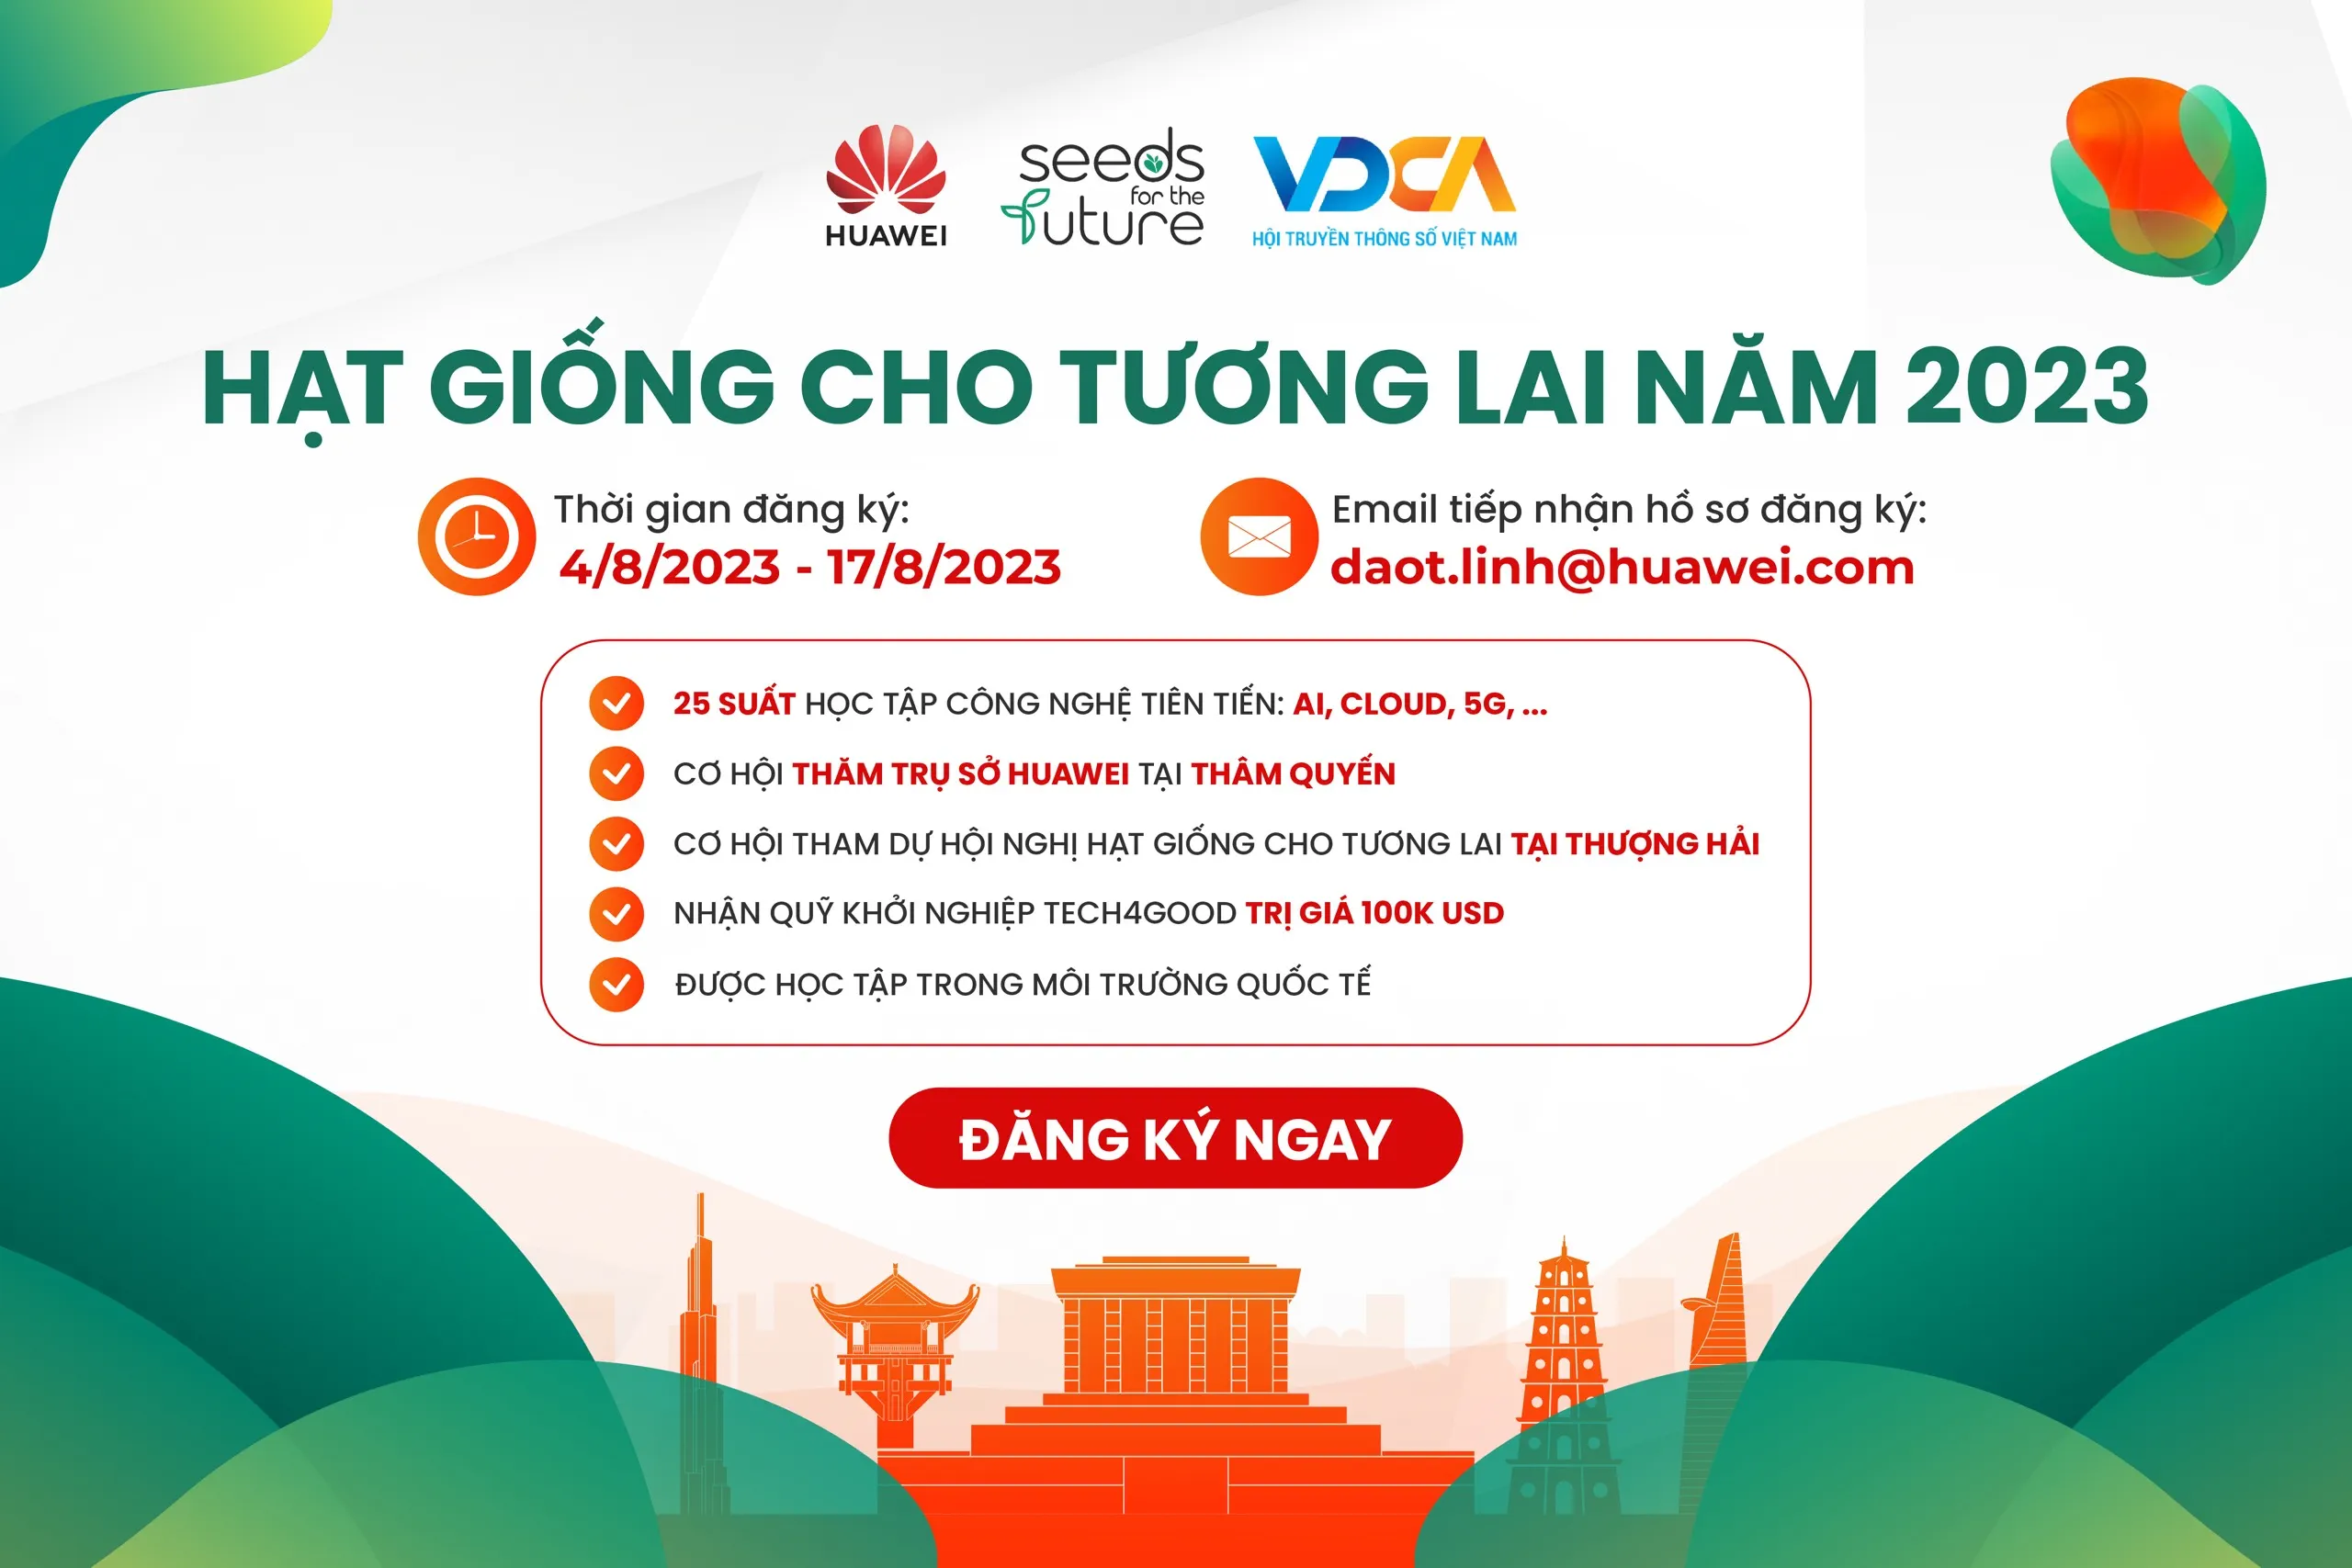 Huawei Việt Nam và VDCA tổ chức chương trình “Hạt giống cho Tương lai 2023” mùa 8